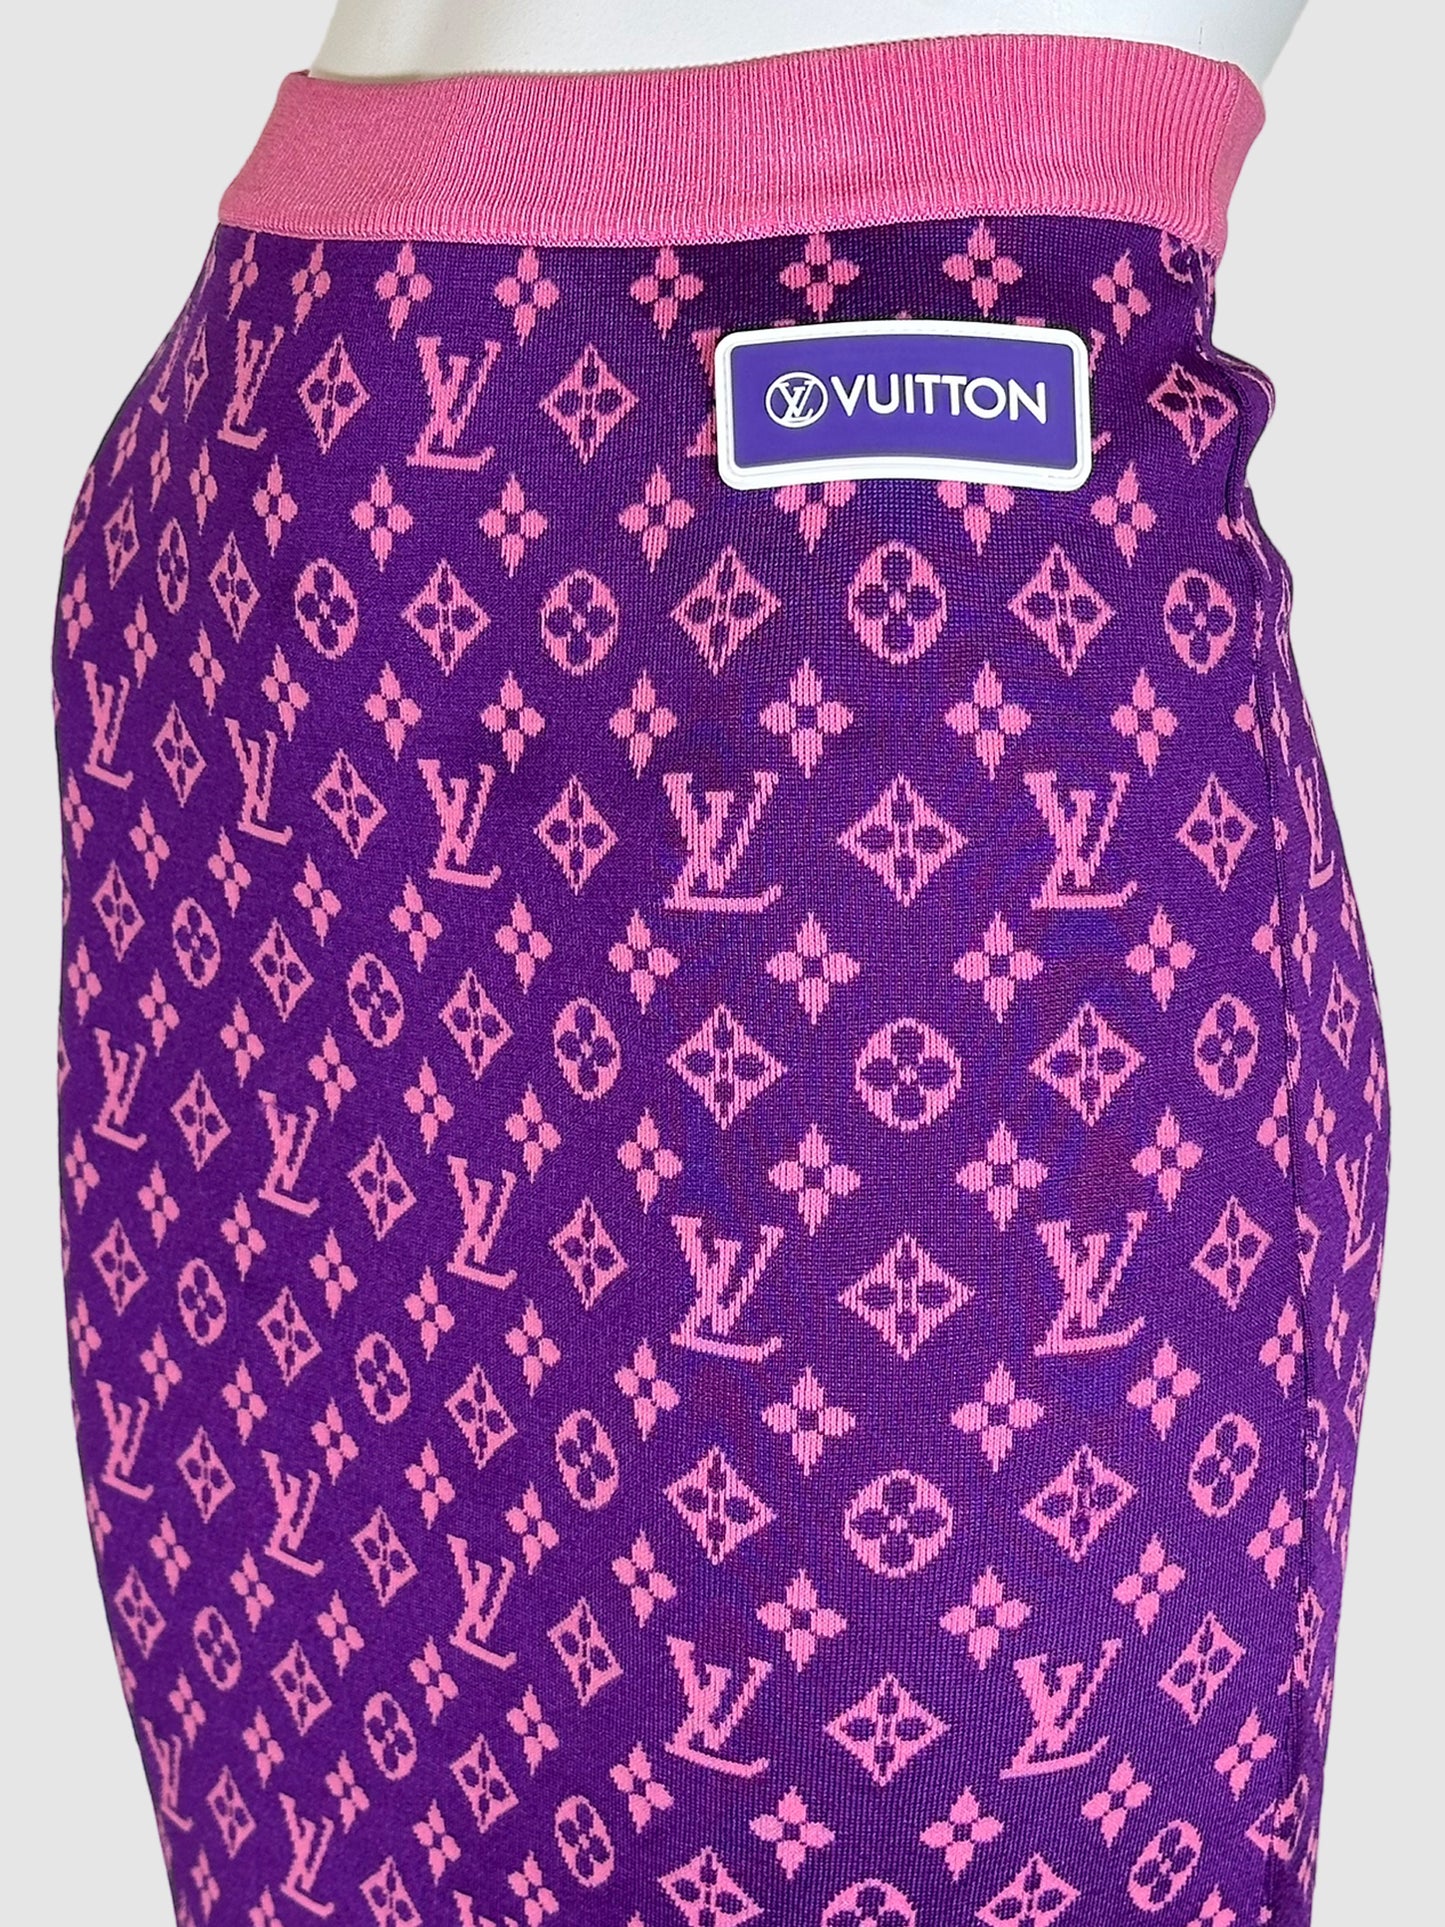 Louis Vuitton Monogram Midi Skirt - Size XS